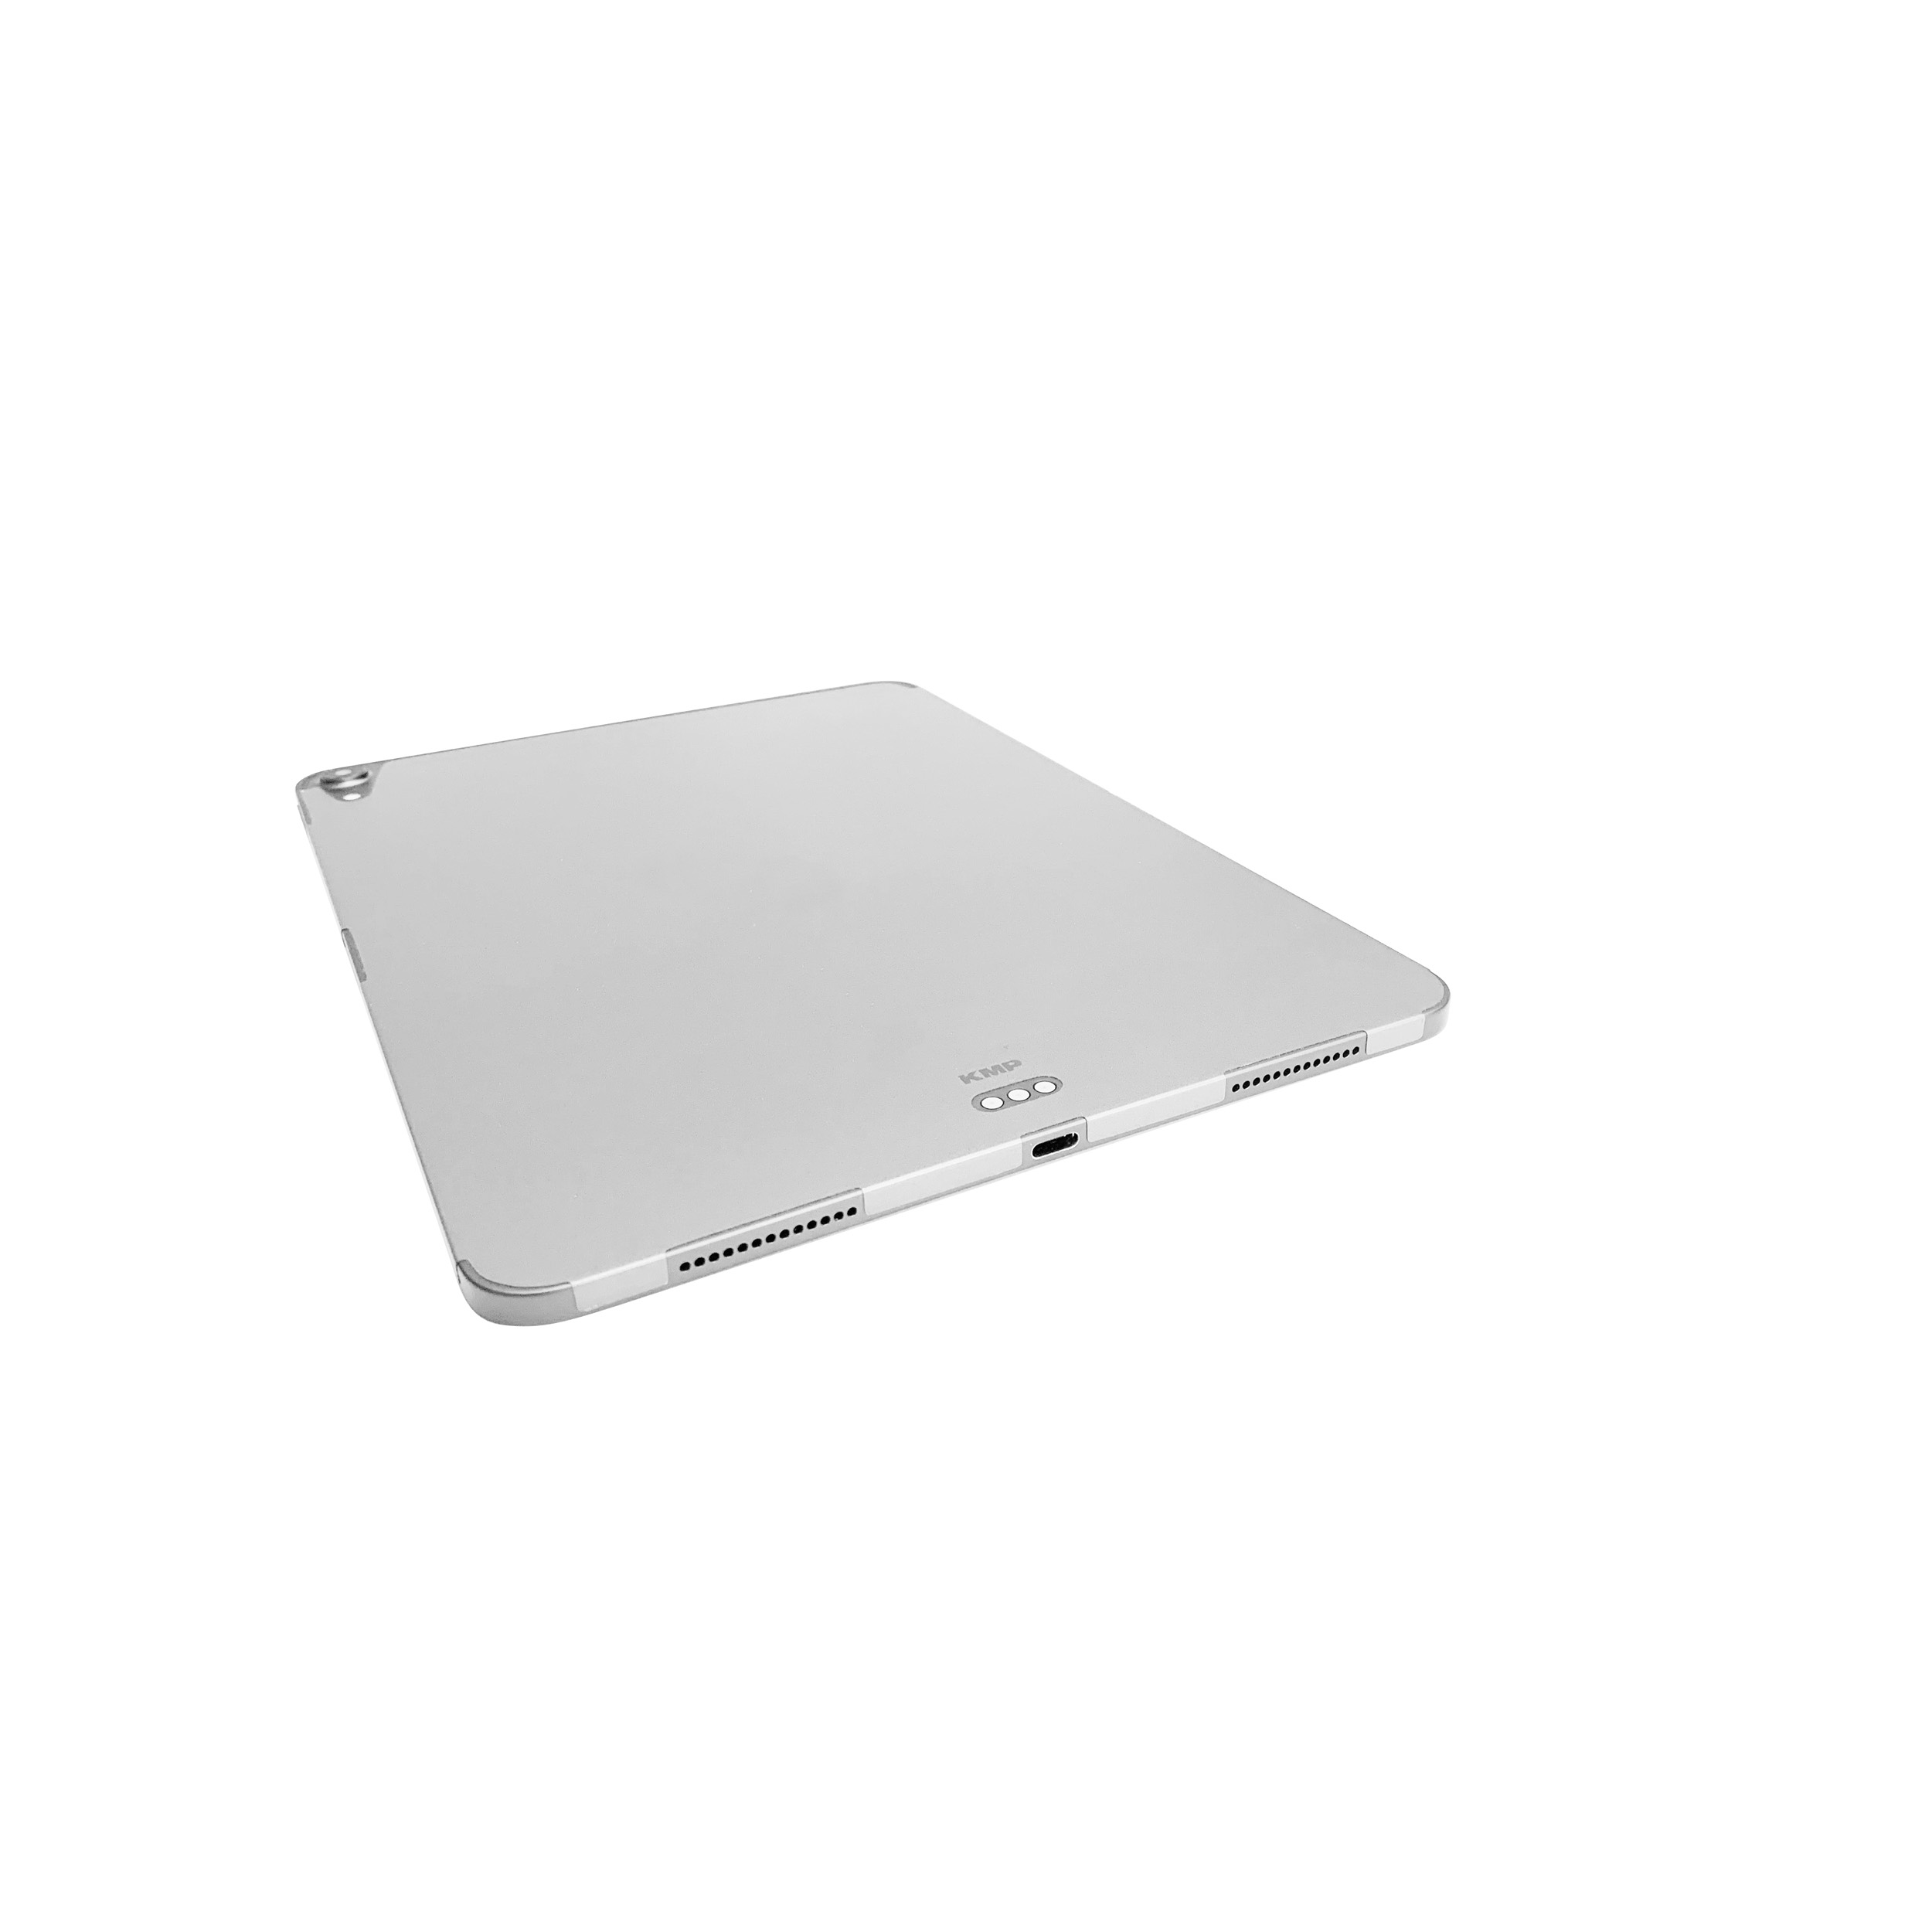 KMP Schutzfolie für iPad Silver Cover Apple 3M-Material, AntiScratchLevel, skin Protective 6H 11 Vinylfilm, Flip für Rückseite Pro silver